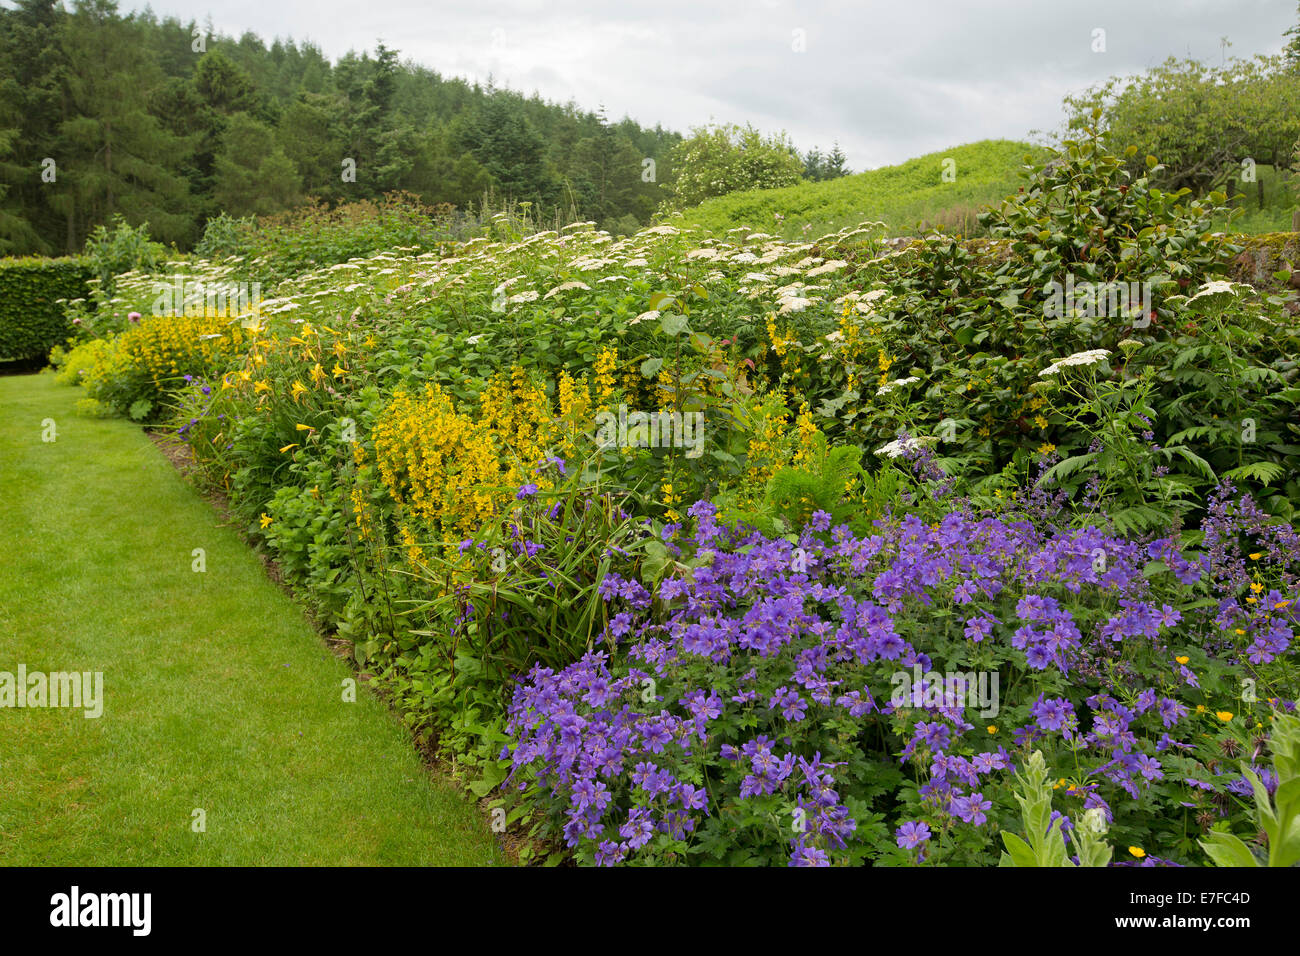 Farbenfrohe Stauden Grenze mit Masse von lila, gelben und weißen Blüten neben Smaragd grünen Rasen im Garten auf historischen Edzell Castle in Schottland Stockfoto